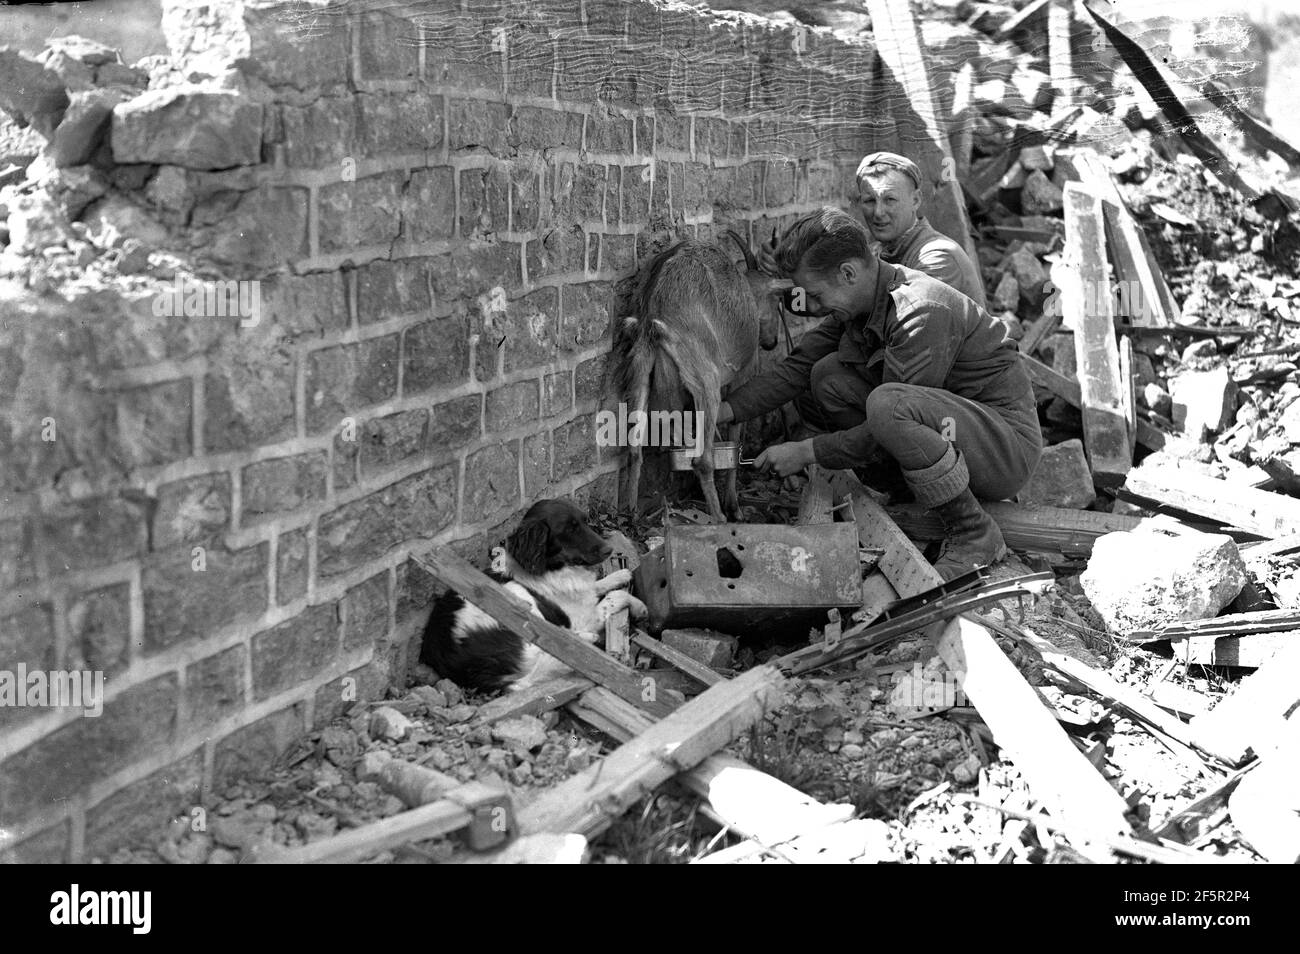 Soldaten melken eine Ziege zwischen bombardierten beschädigten Gebäude während der Welt Krieg zwei Tiere Kriegsgebiet erschreckte verängstigte Ruinen Trümmer Stockfoto